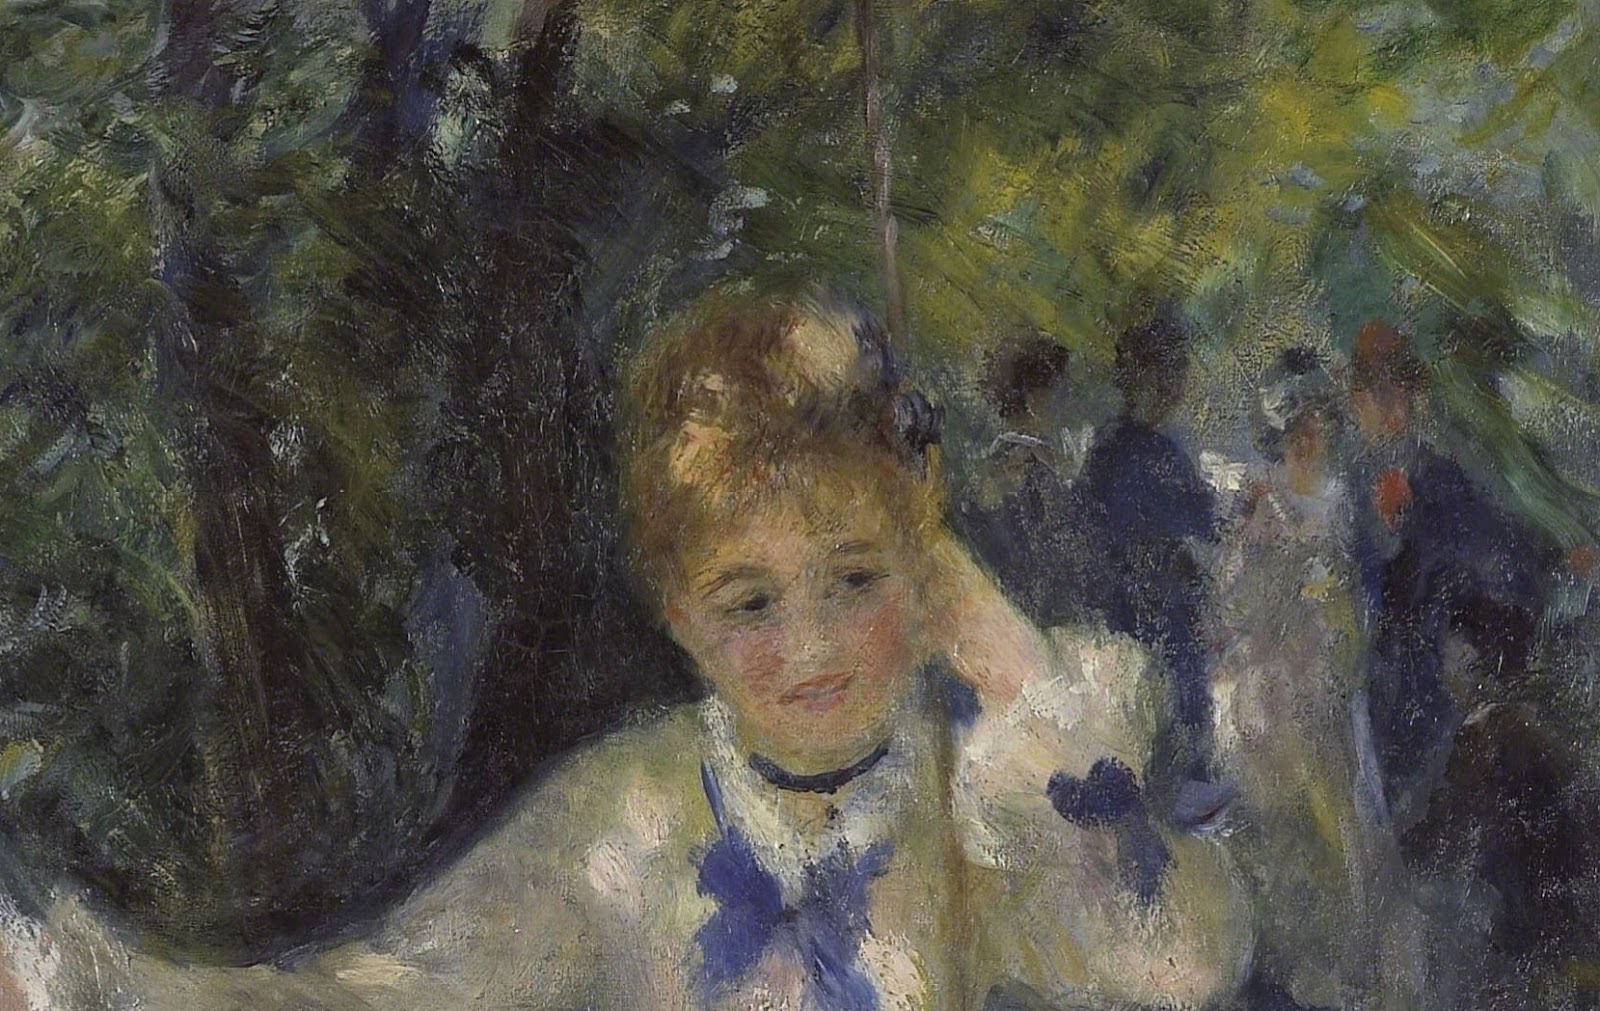 Pierre+Auguste+Renoir-1841-1-19 (692).JPG